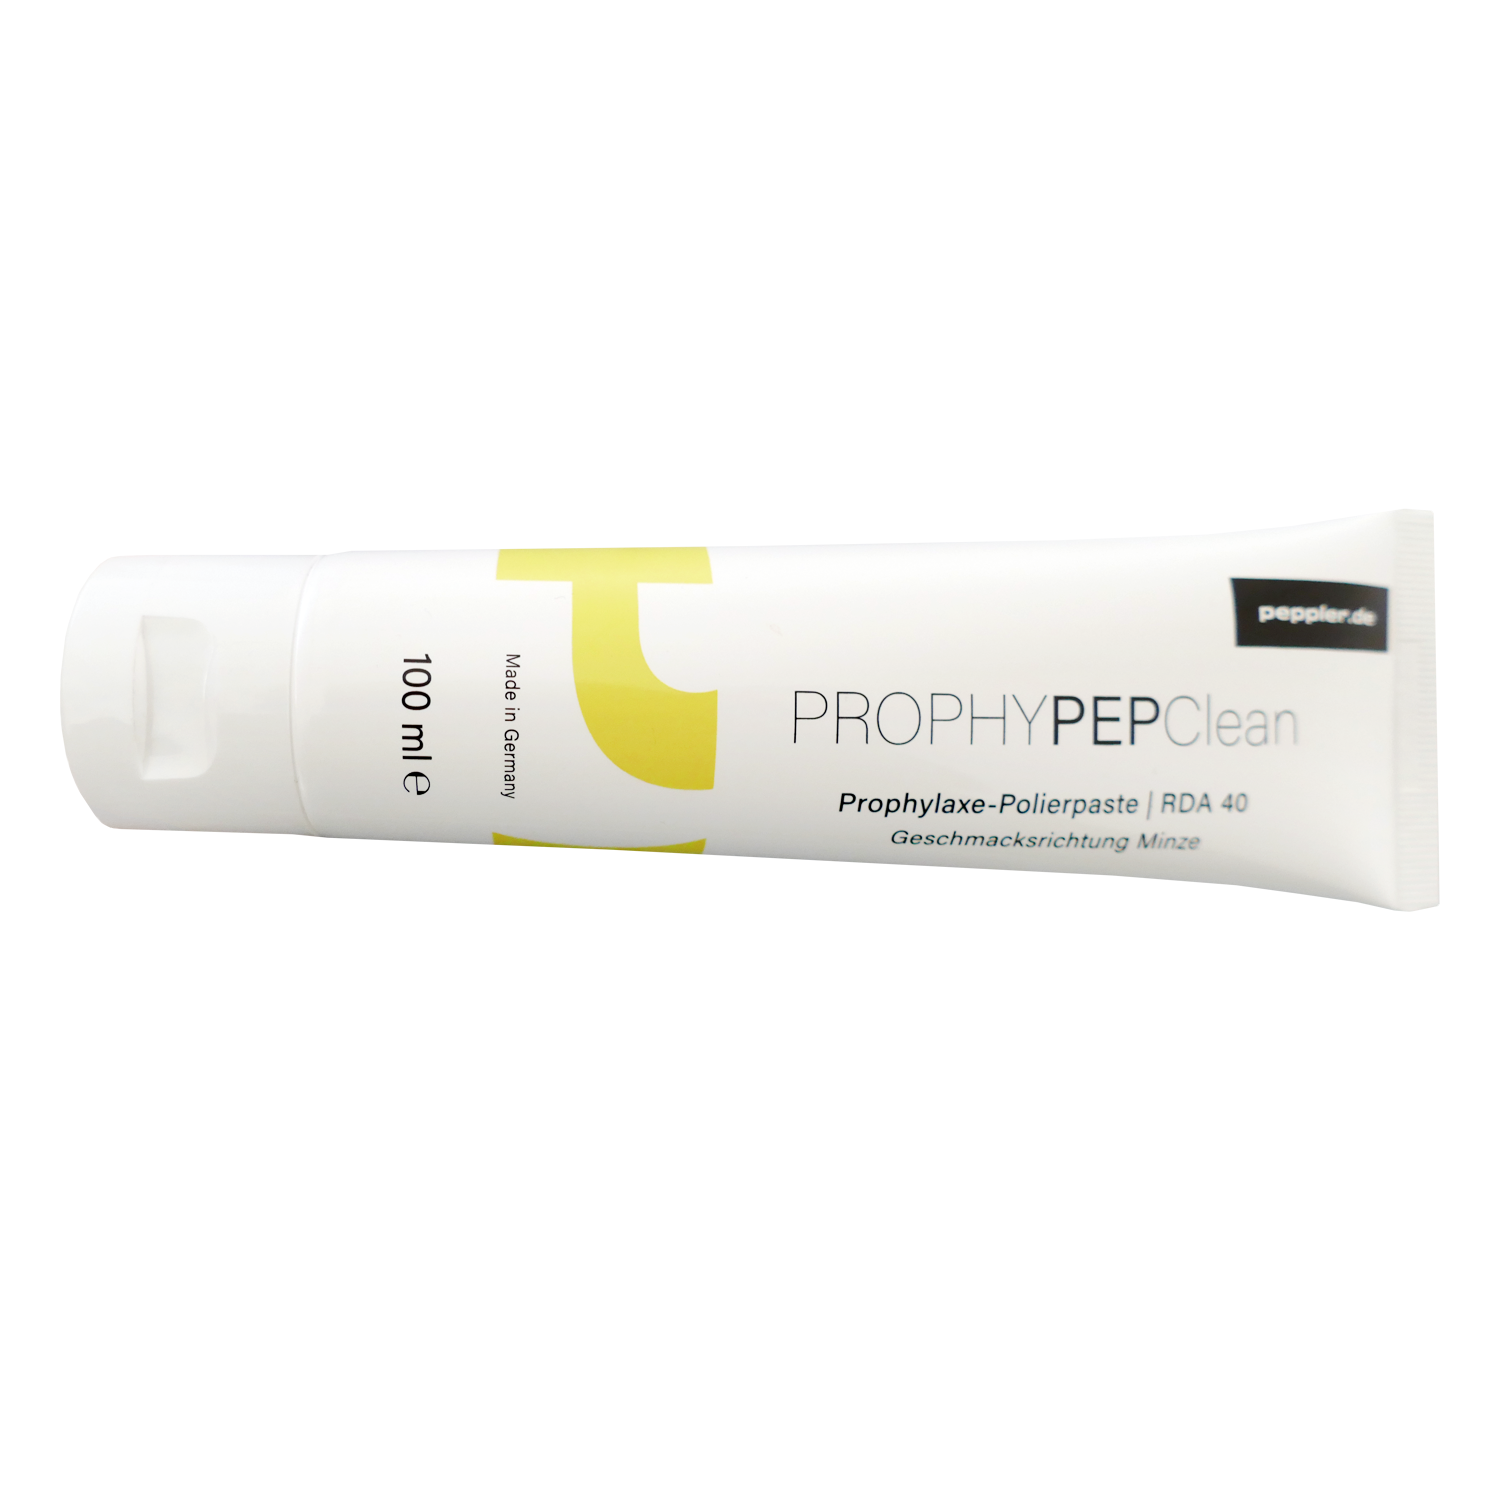 ProphyPep Clean Prophylaxe-Polierpaste, RDA 40, Minze